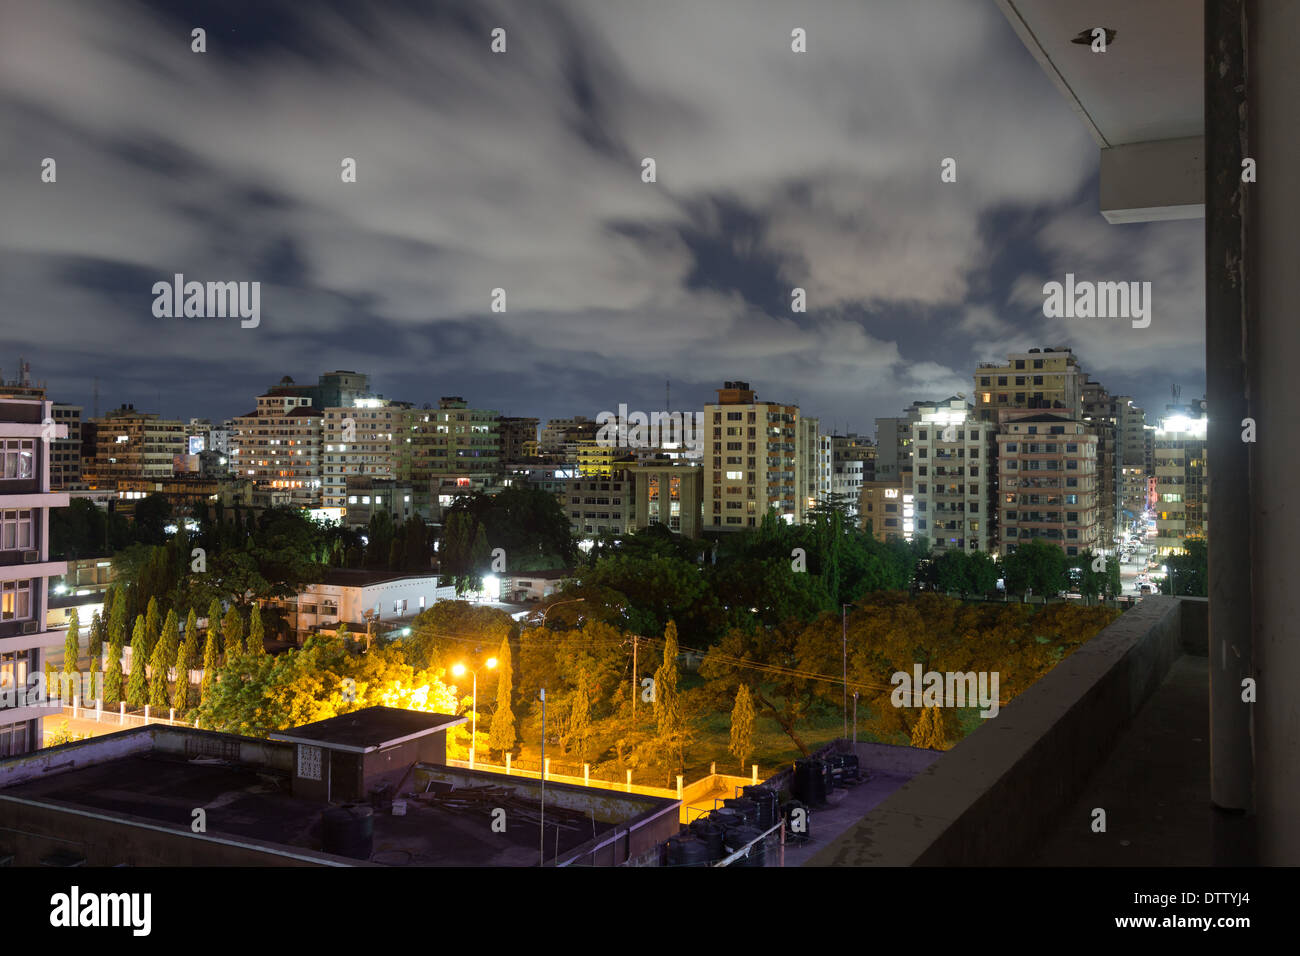 Vue de nuit sur le centre-ville de la ville de Dar Es Salaam, Tanzanie, la nuit Banque D'Images